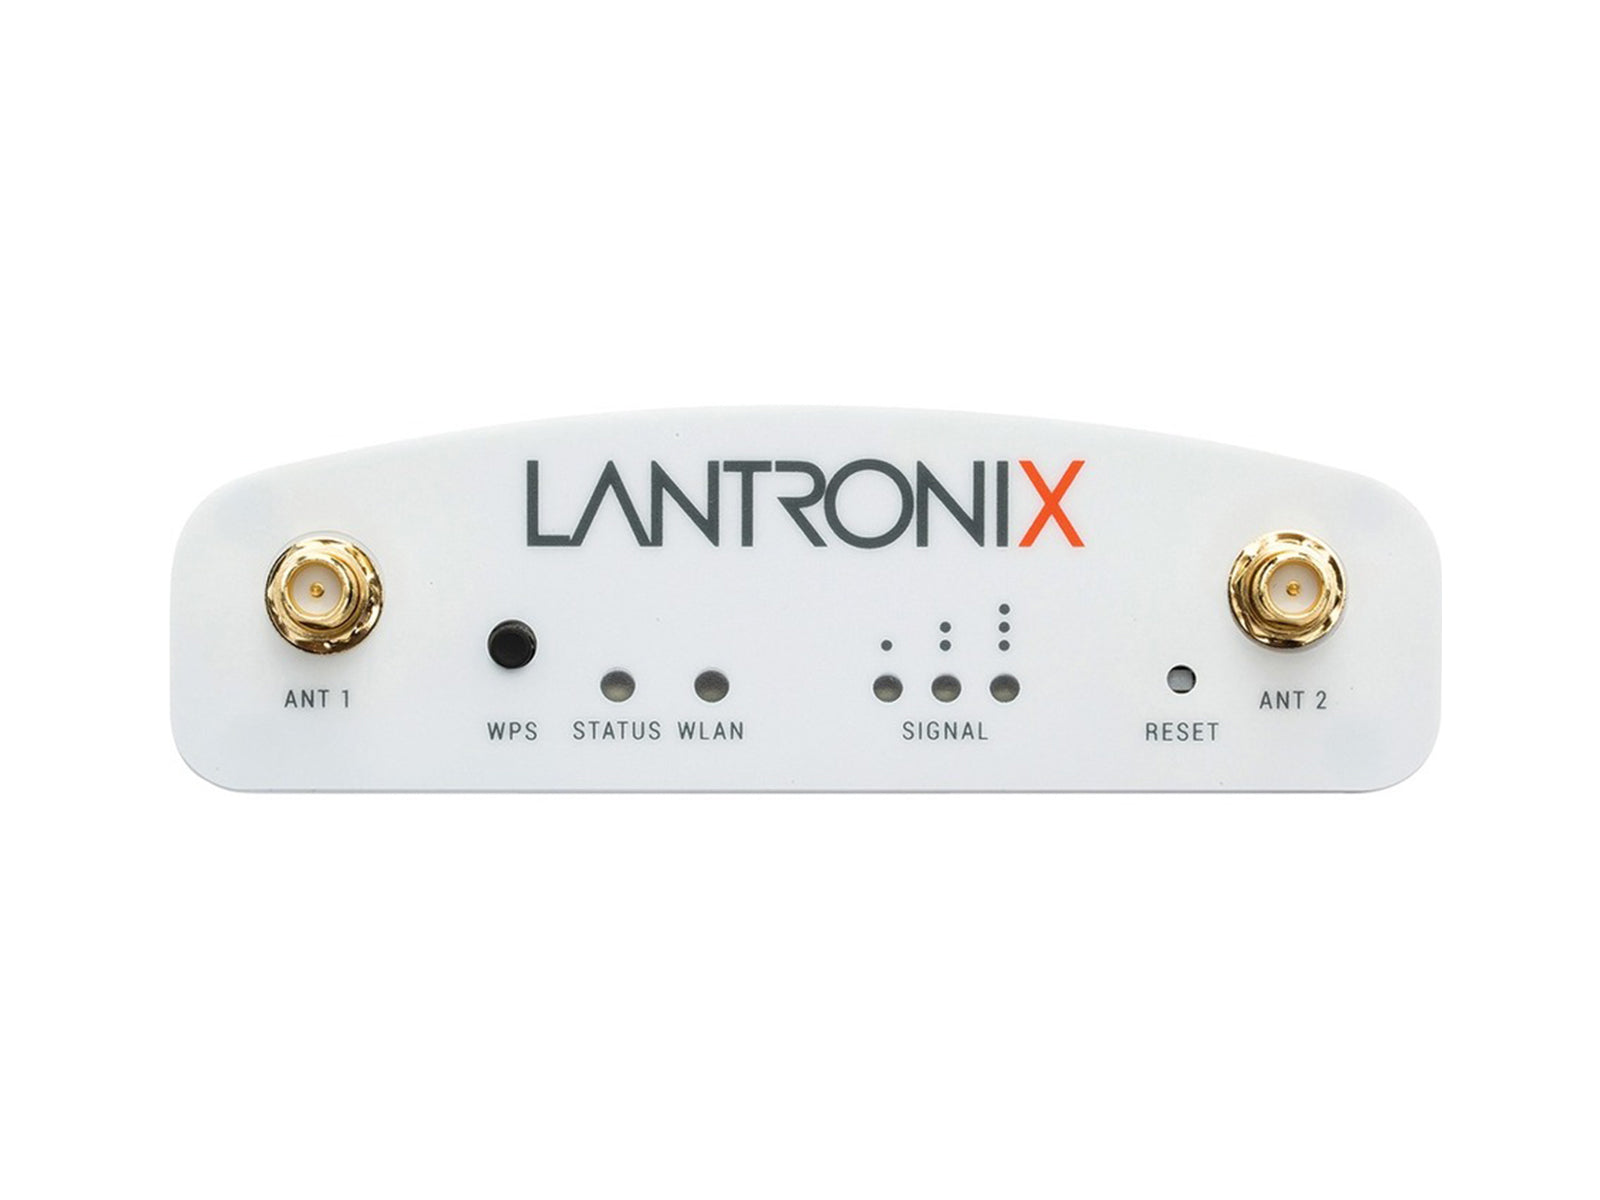 Lantronix SGX 5150 デバイス ゲートウェイ ルーター デュアル バンド ワイヤレスおよびイーサネット (SGX5150000US)